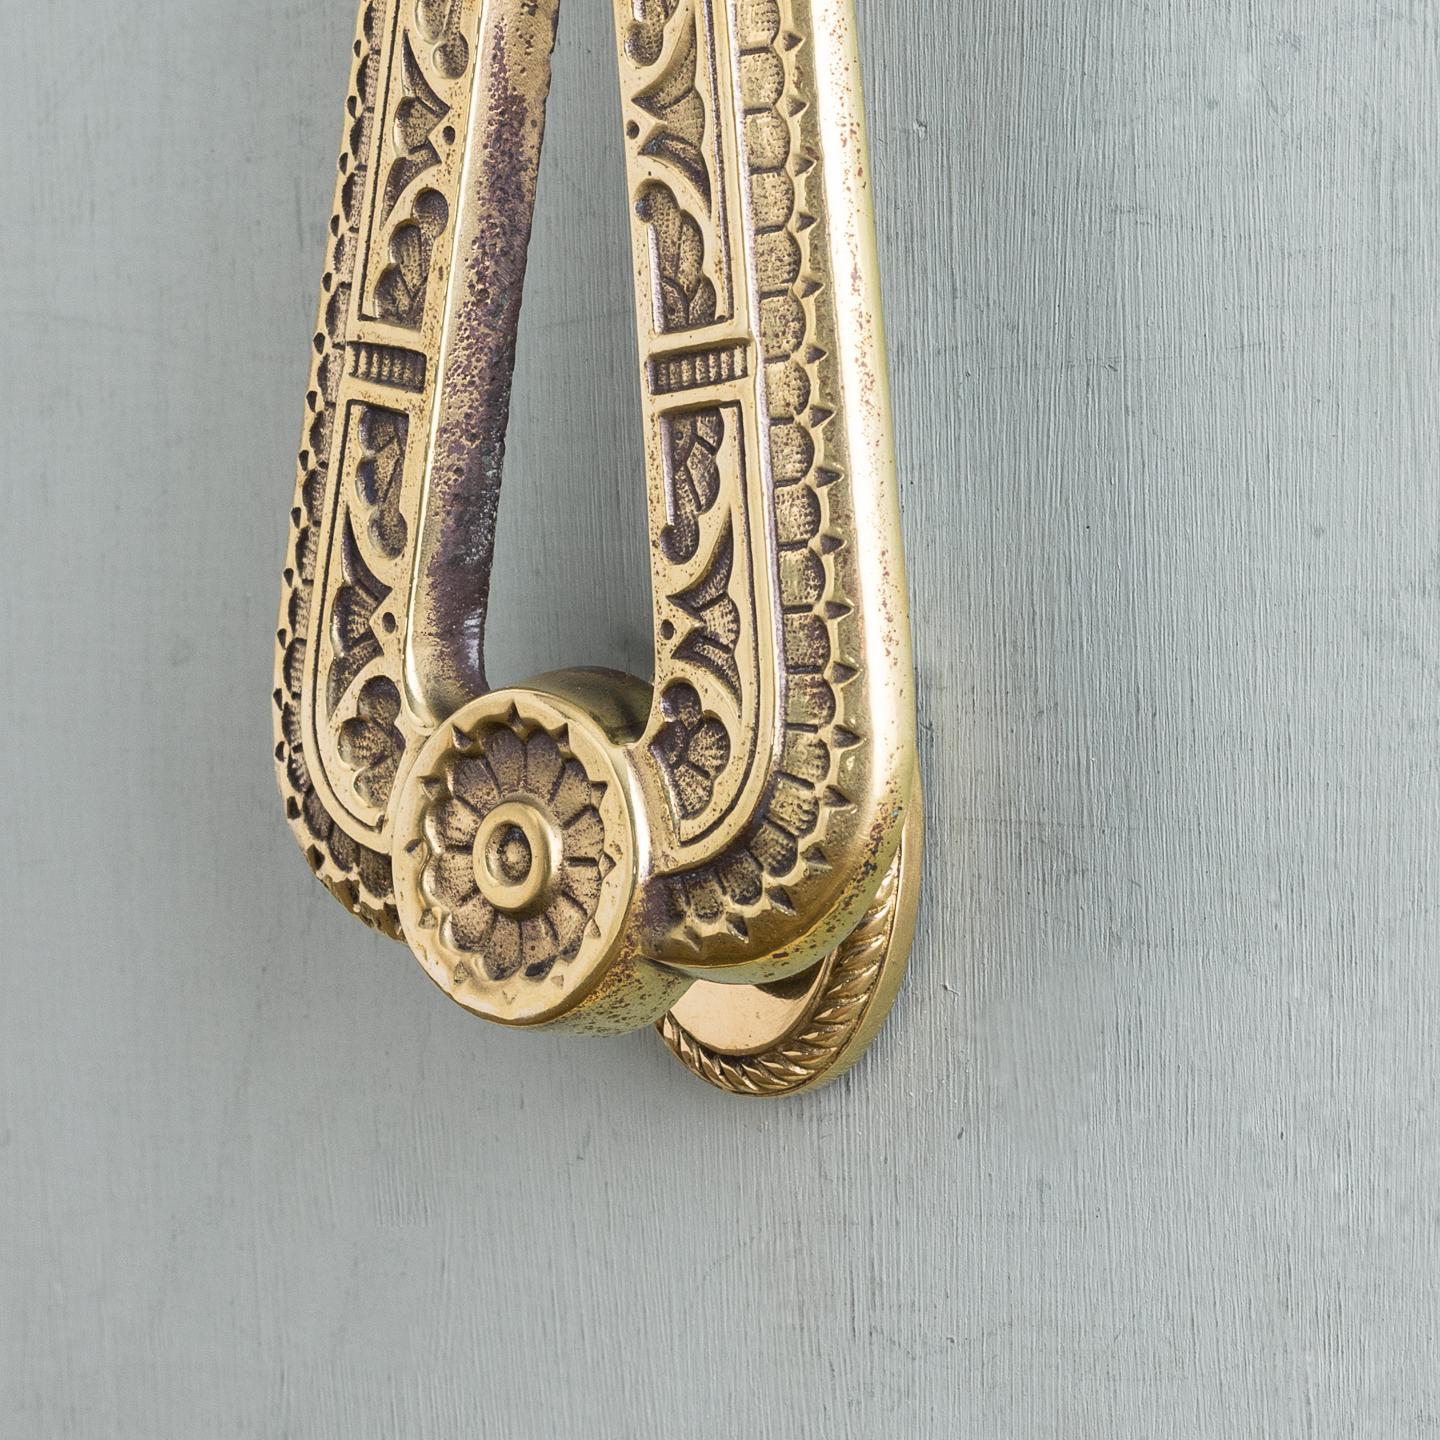 British Victorian Aesthetic Period Brass Door Knocker